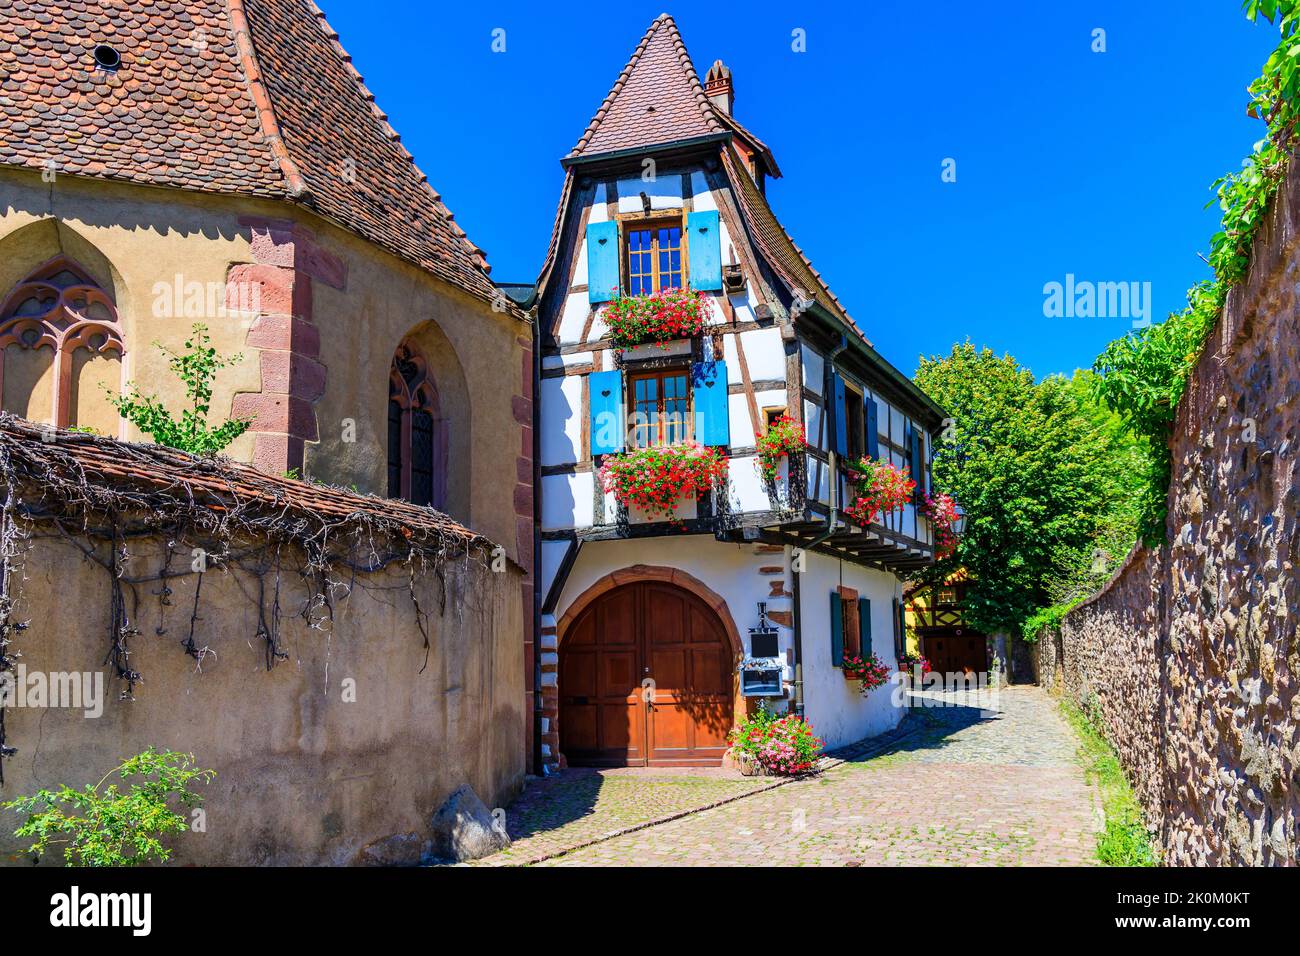 Kaysersberg vignoble, France. Rue pittoresque avec maisons traditionnelles à colombages sur la route des vins d'Alsace. Banque D'Images